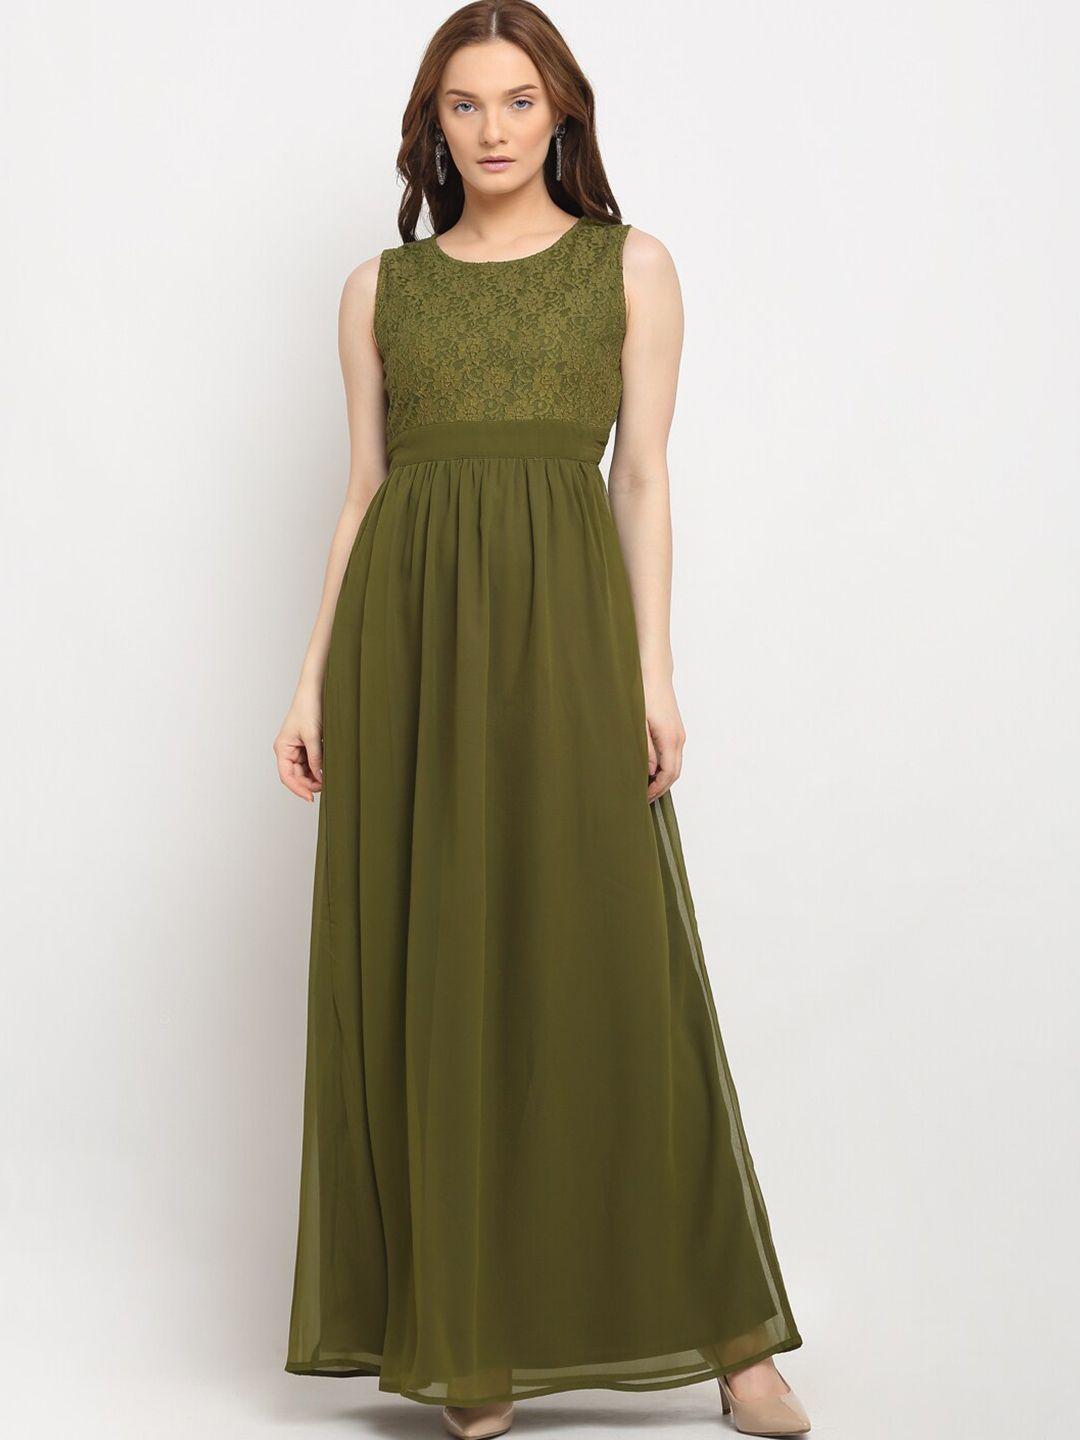 la-zoire-women-olive-green-solid-lace-yoke-design-georgette-maxi-dress